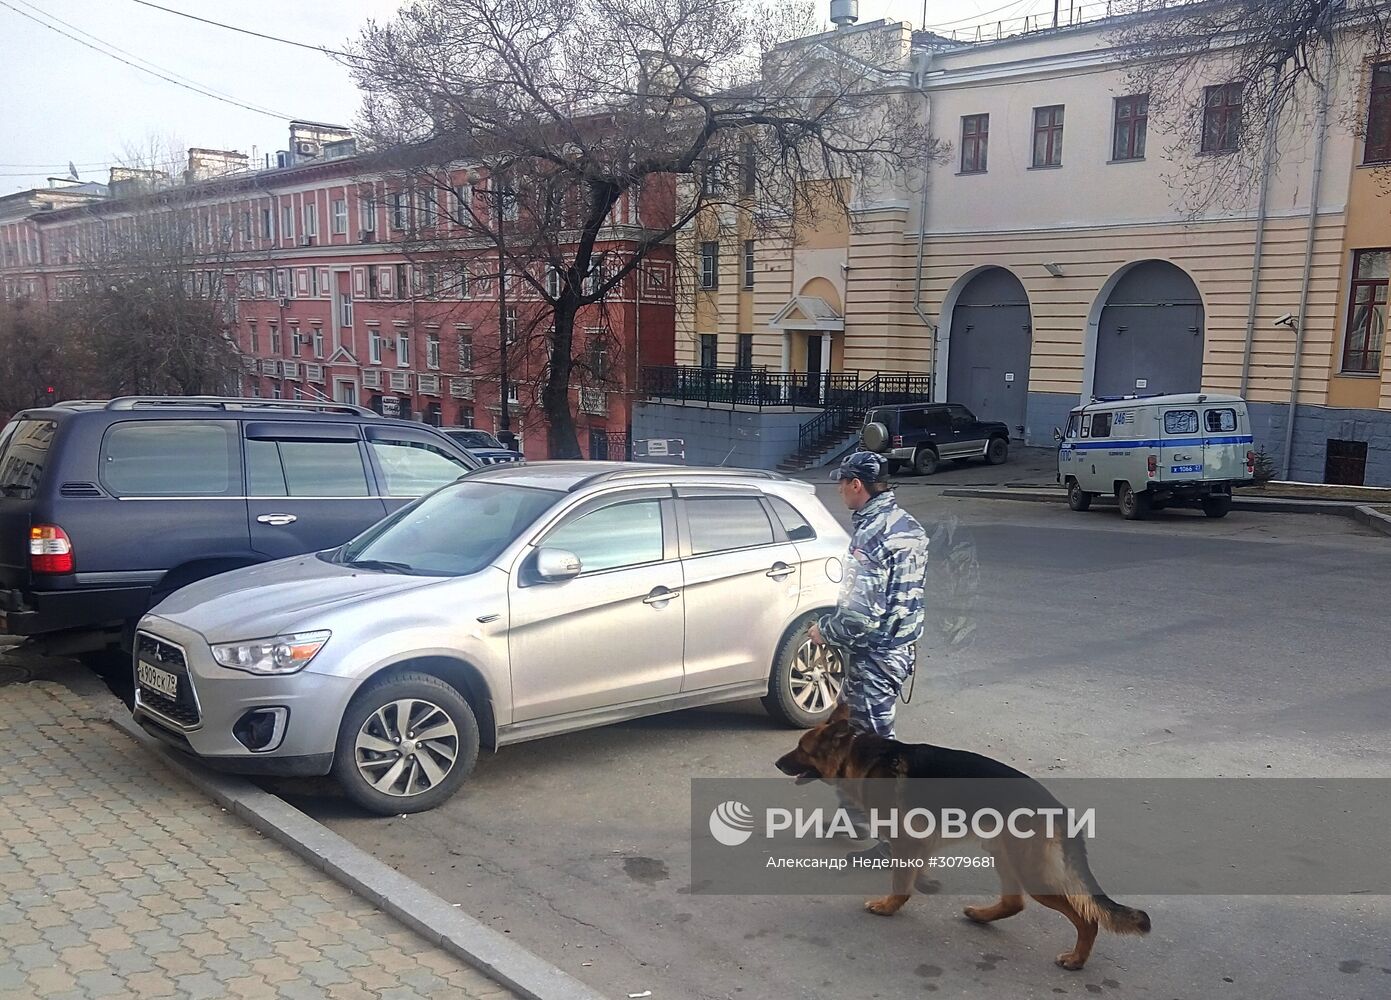 Вооружённое нападение на приёмную ФСБ произошло в Хабаровске